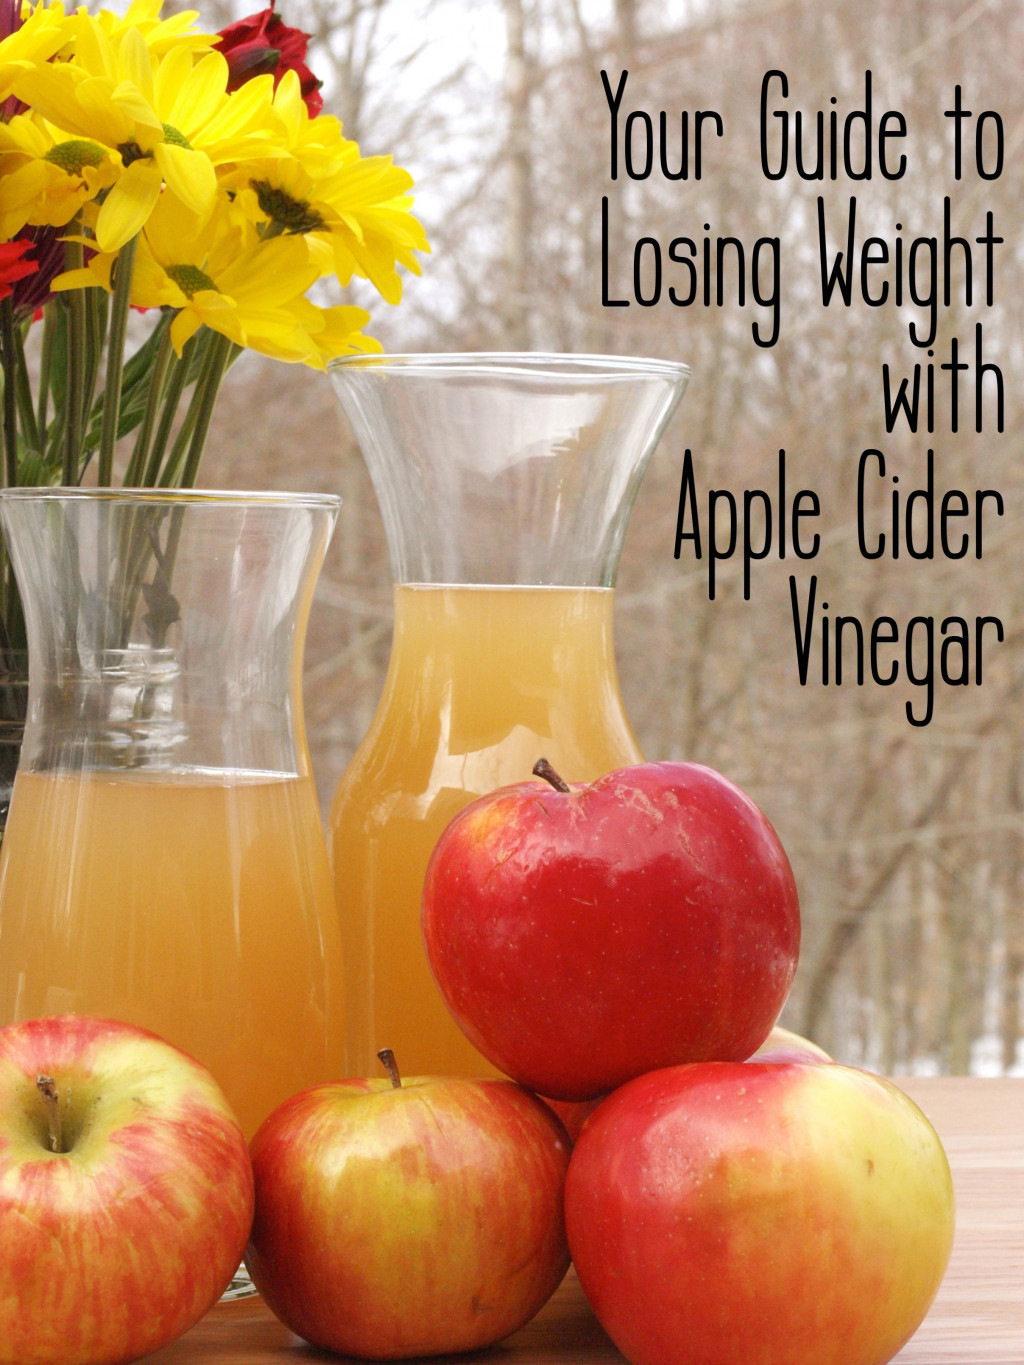 Apple Cider Vinegar Weight Loss Recipes
 Apple Cider Vinegar Recipes for Weight Loss